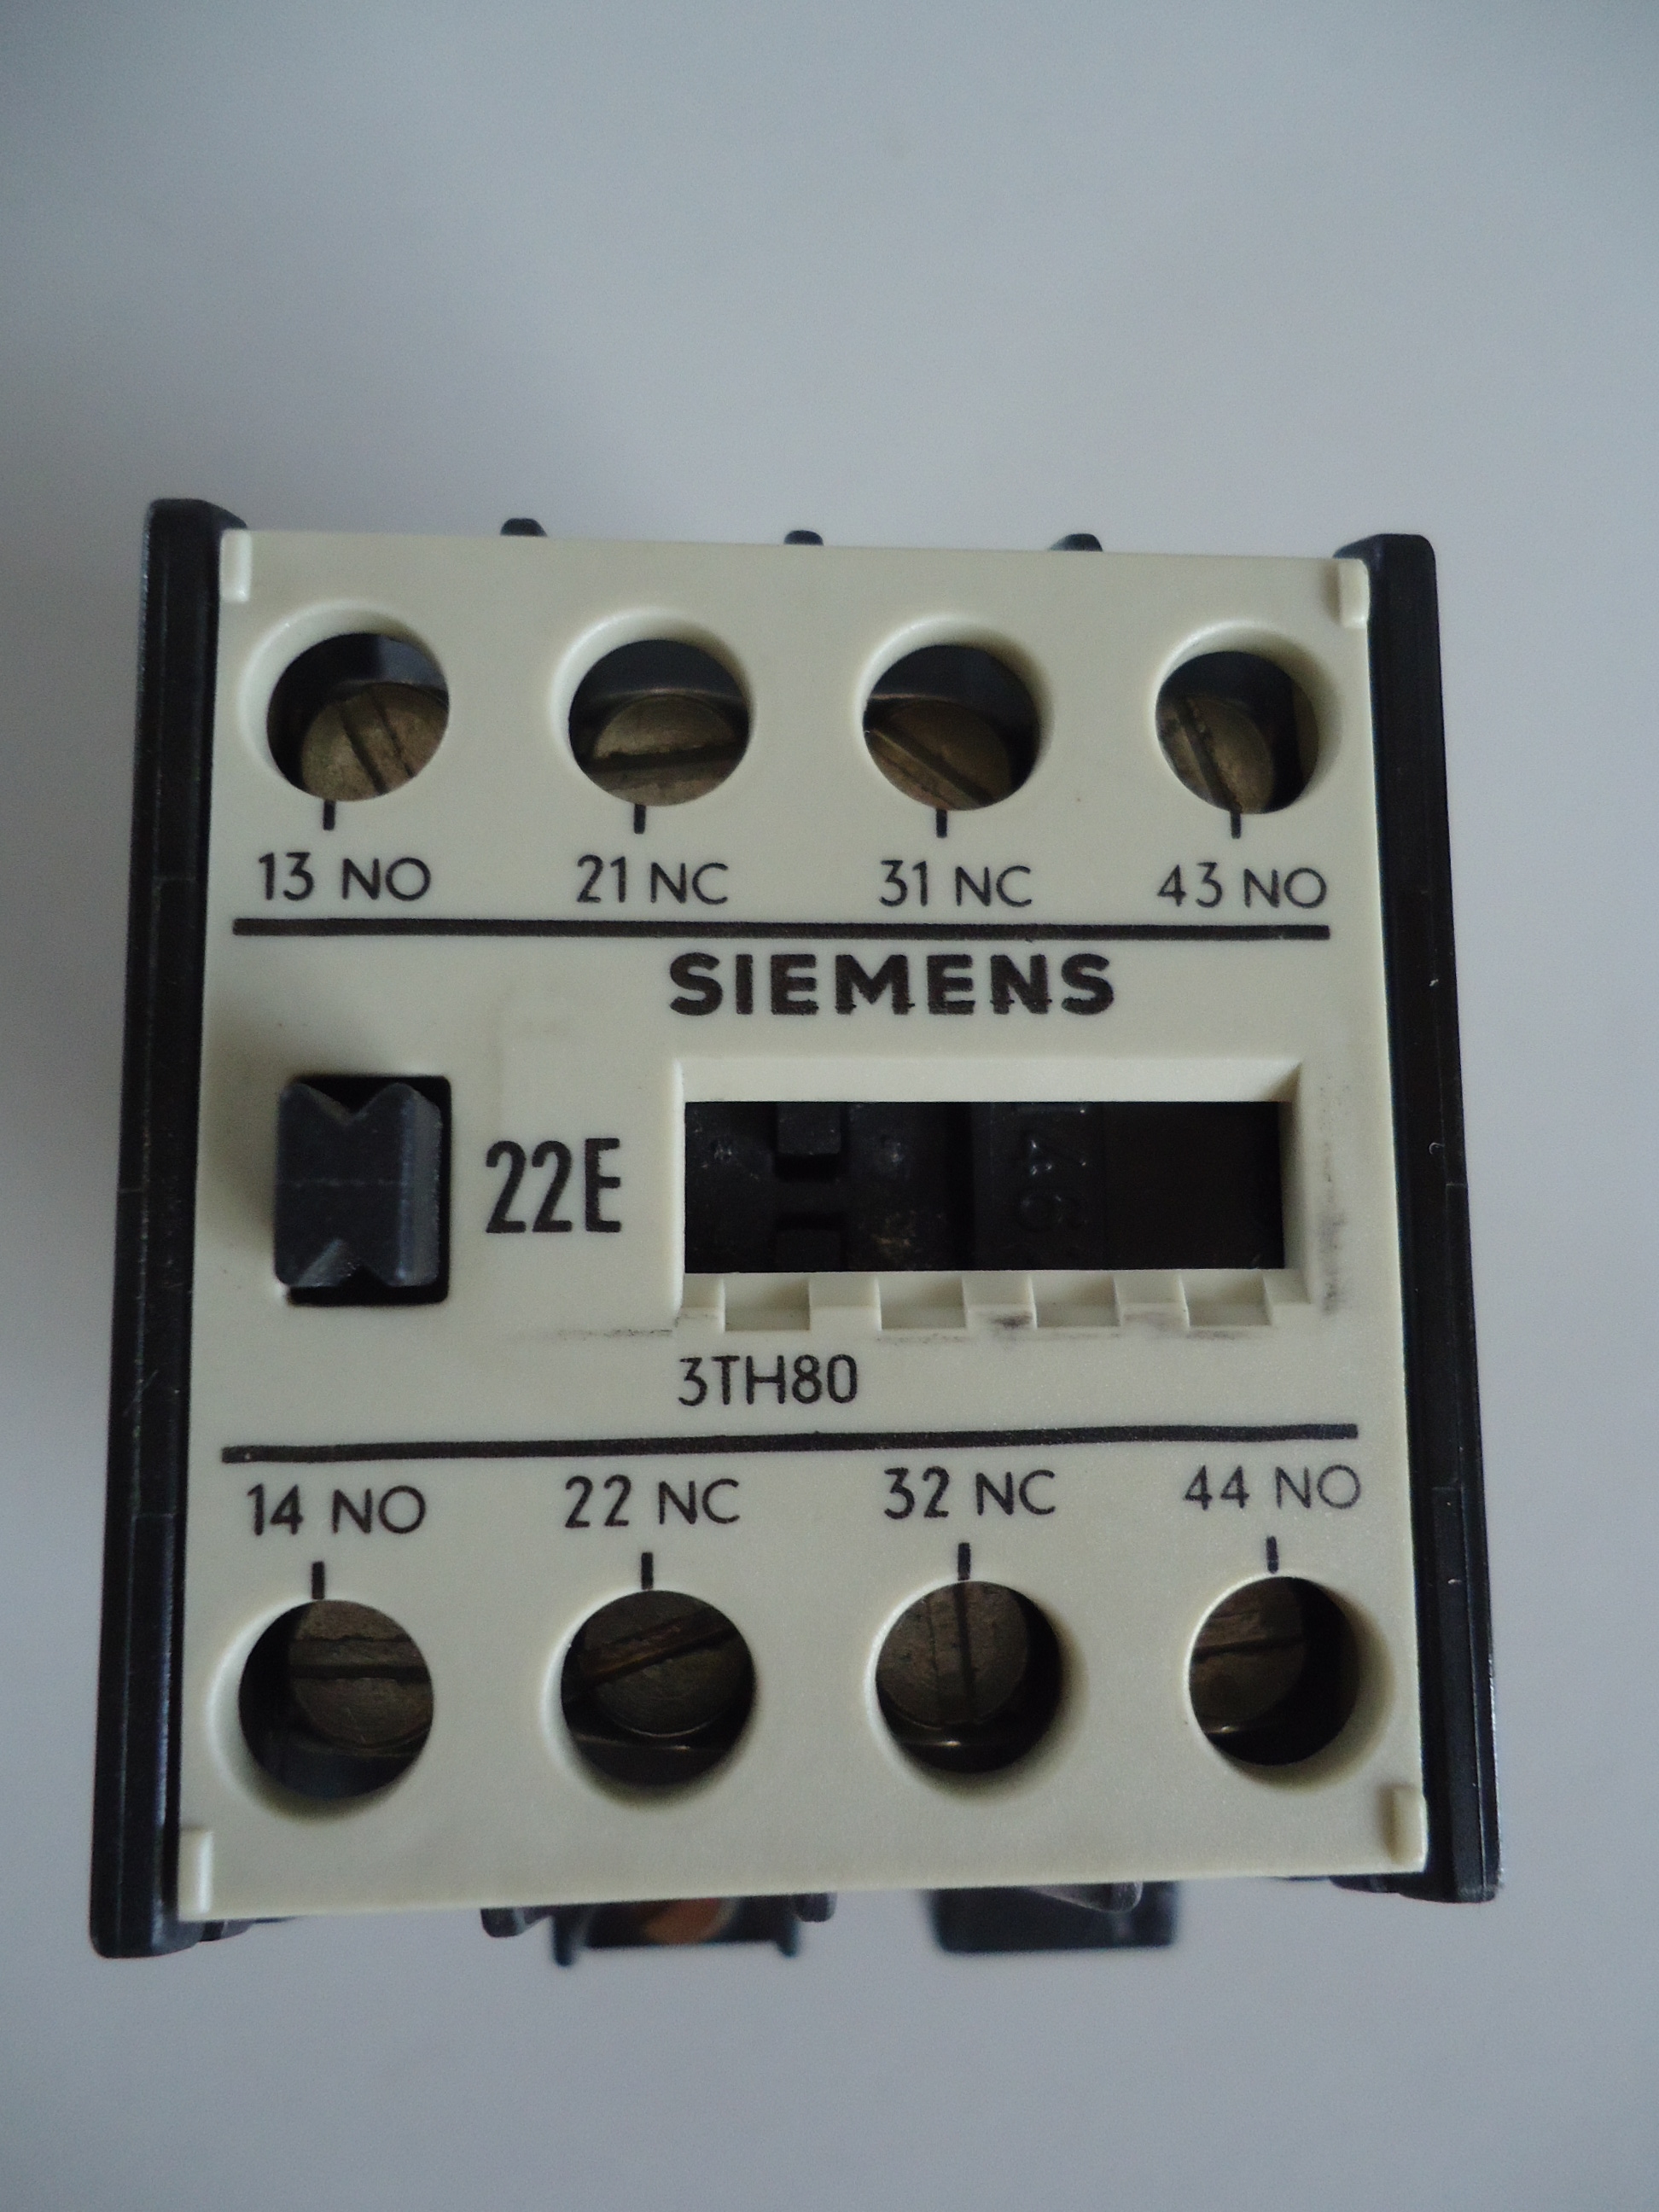 3TH80 22E Siemens relay